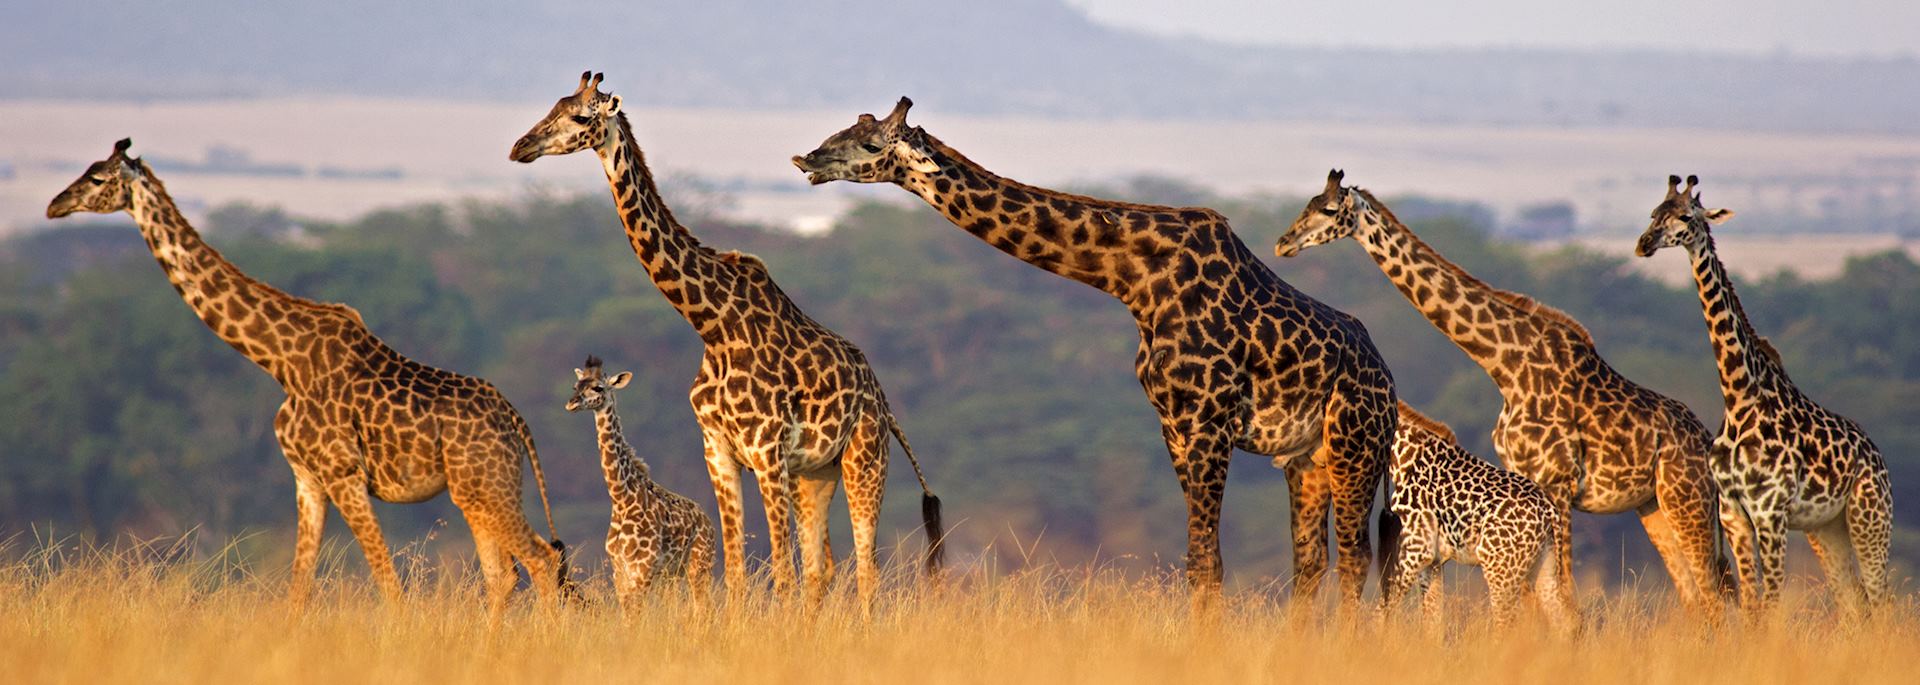 Giraffe family, Africa